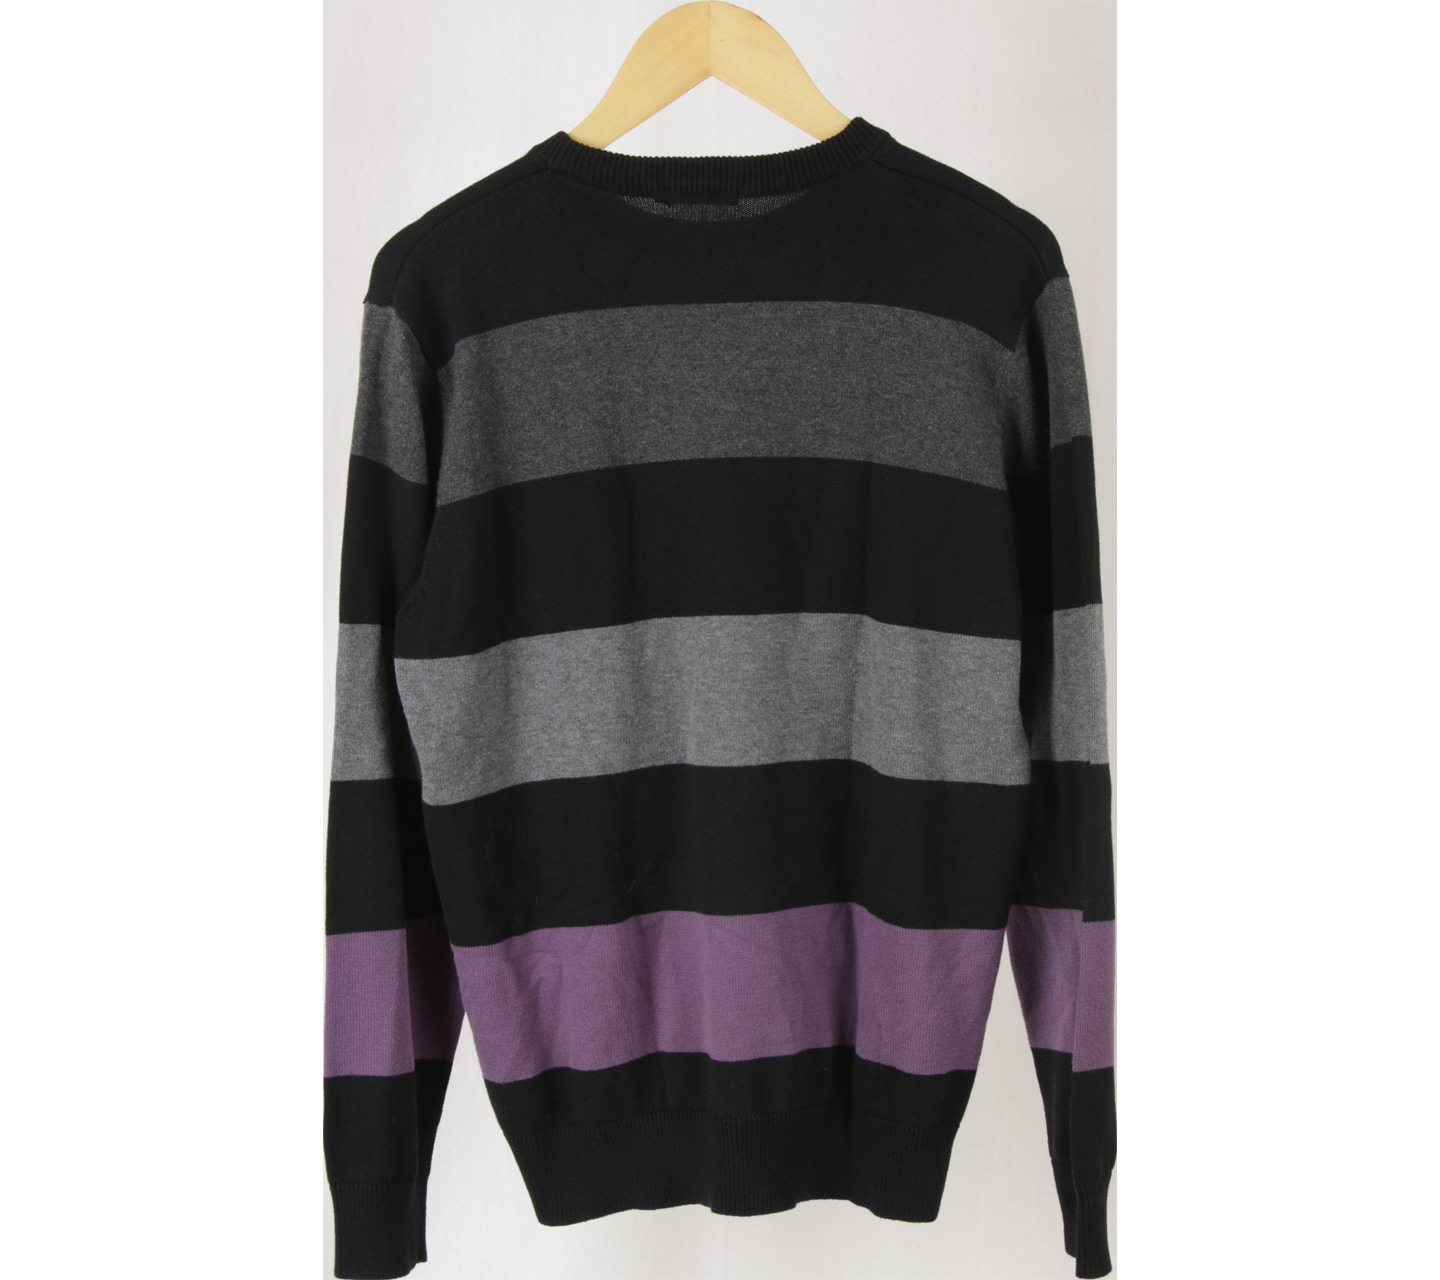 Bossini Multi Colour Striped Sweater